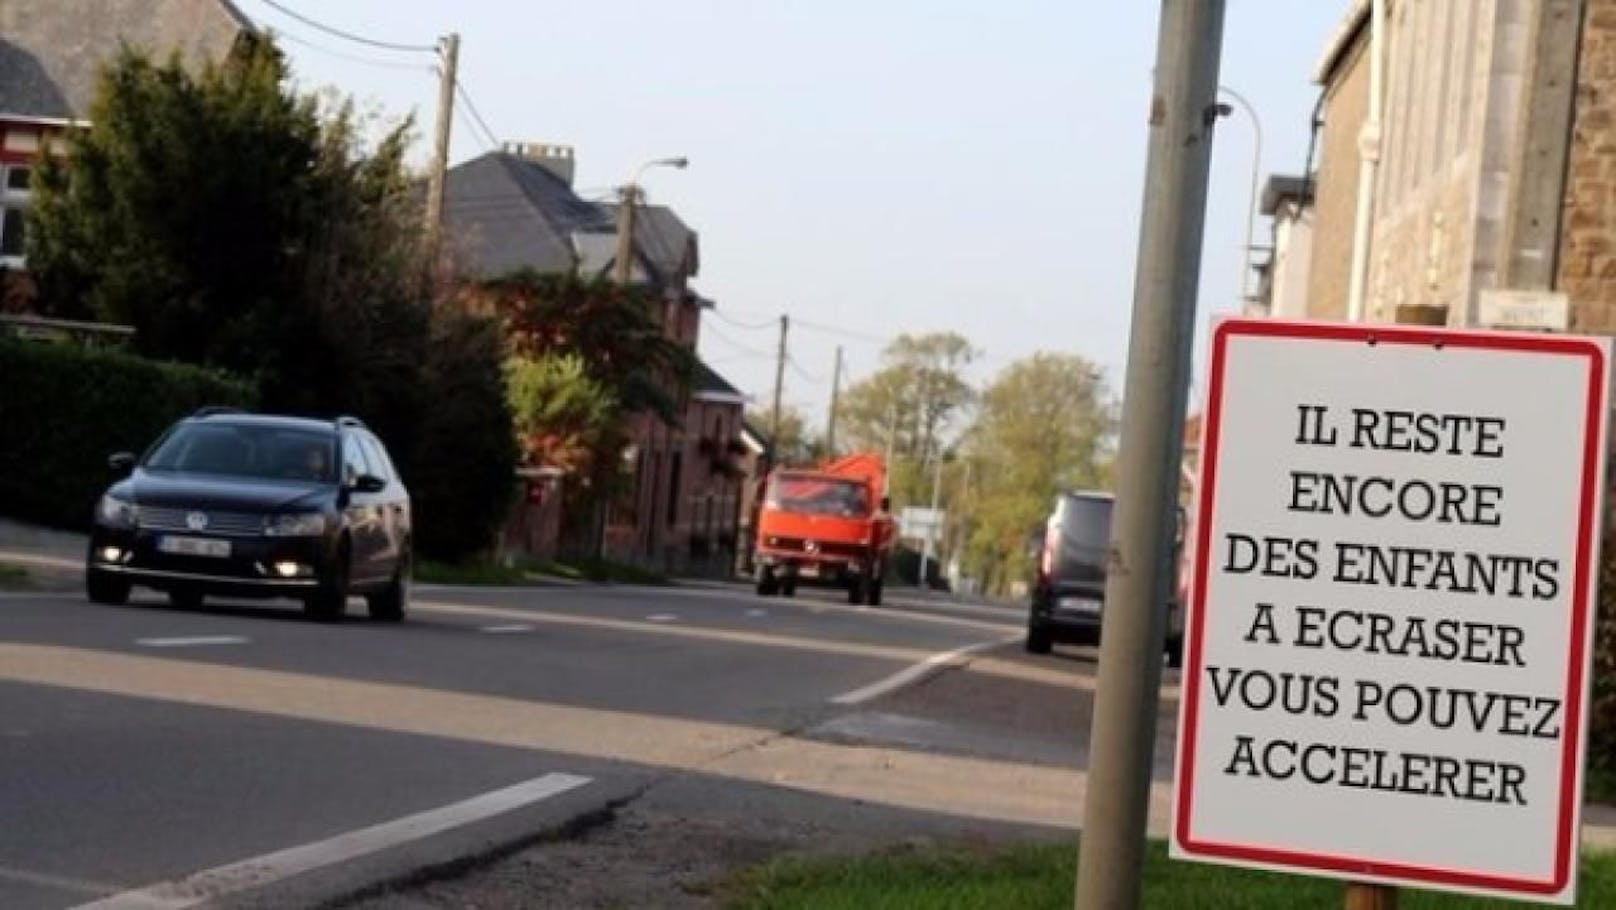 Bürger in Rage: Das Schock-Plakat richtet sich nicht nur gegen die Autofahrer.